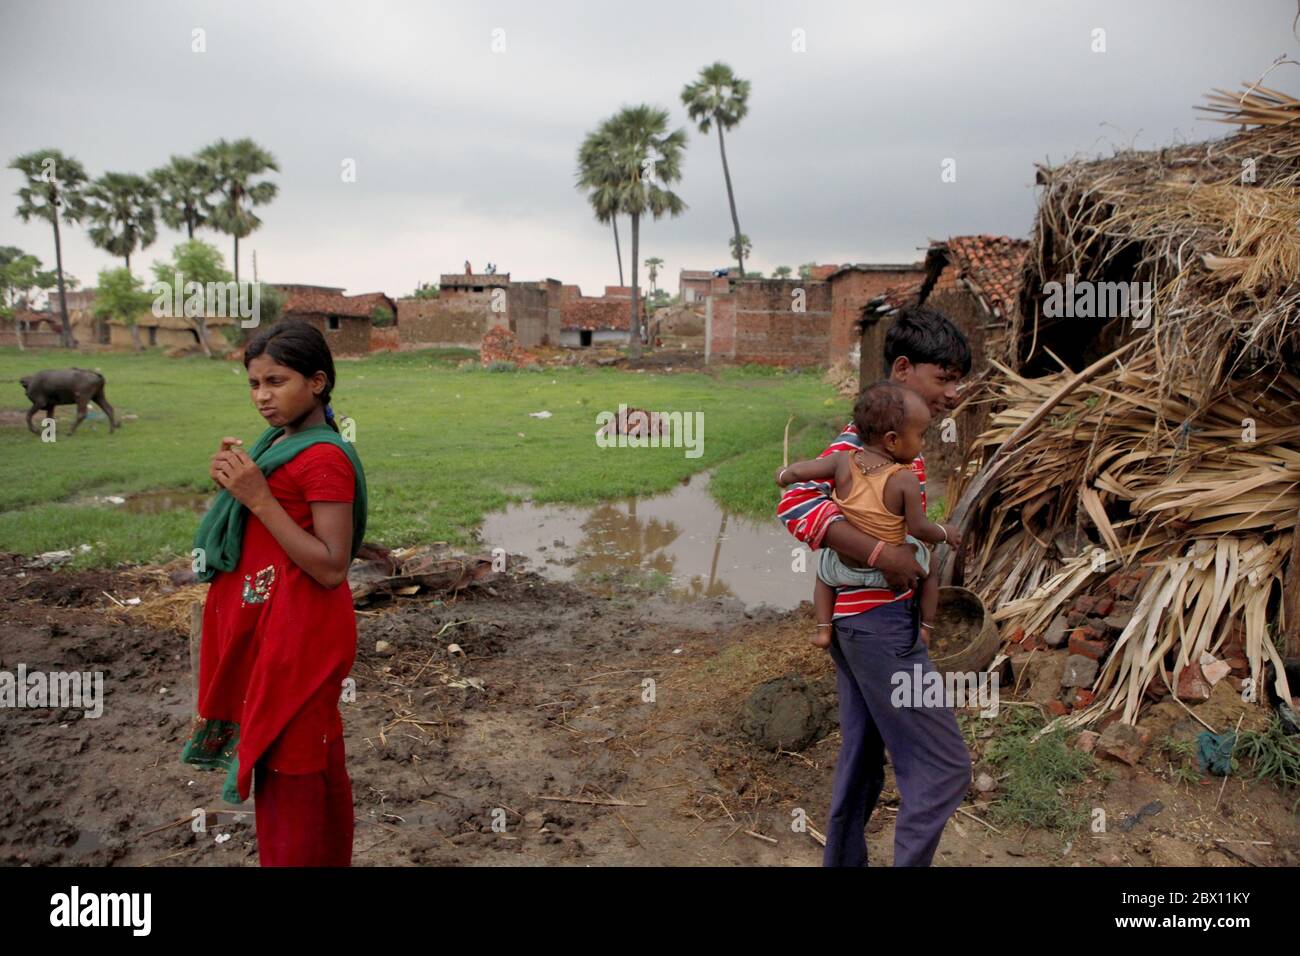 Kostenlose Schule und Wohnheim in Dungeshwari, Bihar, Indien Portrait von Teenagern auf der Landstraße in der Nähe des Dorfes Dungeshwari, Wo die Join Together Society die Sujata Academy leitet, um die Bildung von Kindern in ländlichen Gebieten zu unterstützen. die Daten der UNESCO zur Teilnahme an Bildungsmaßnahmen zeigen, dass die Zahl der außerschulischen Kinder in Indien im Jahr 2013 mehr als 2 Millionen (Männer) und fast 1 Millionen (Frauen) betrug. Mit einer Brutto-Einschulungsquote von 60 bis 70 Prozent im selben Jahr für Männer und Frauen. Stockfoto